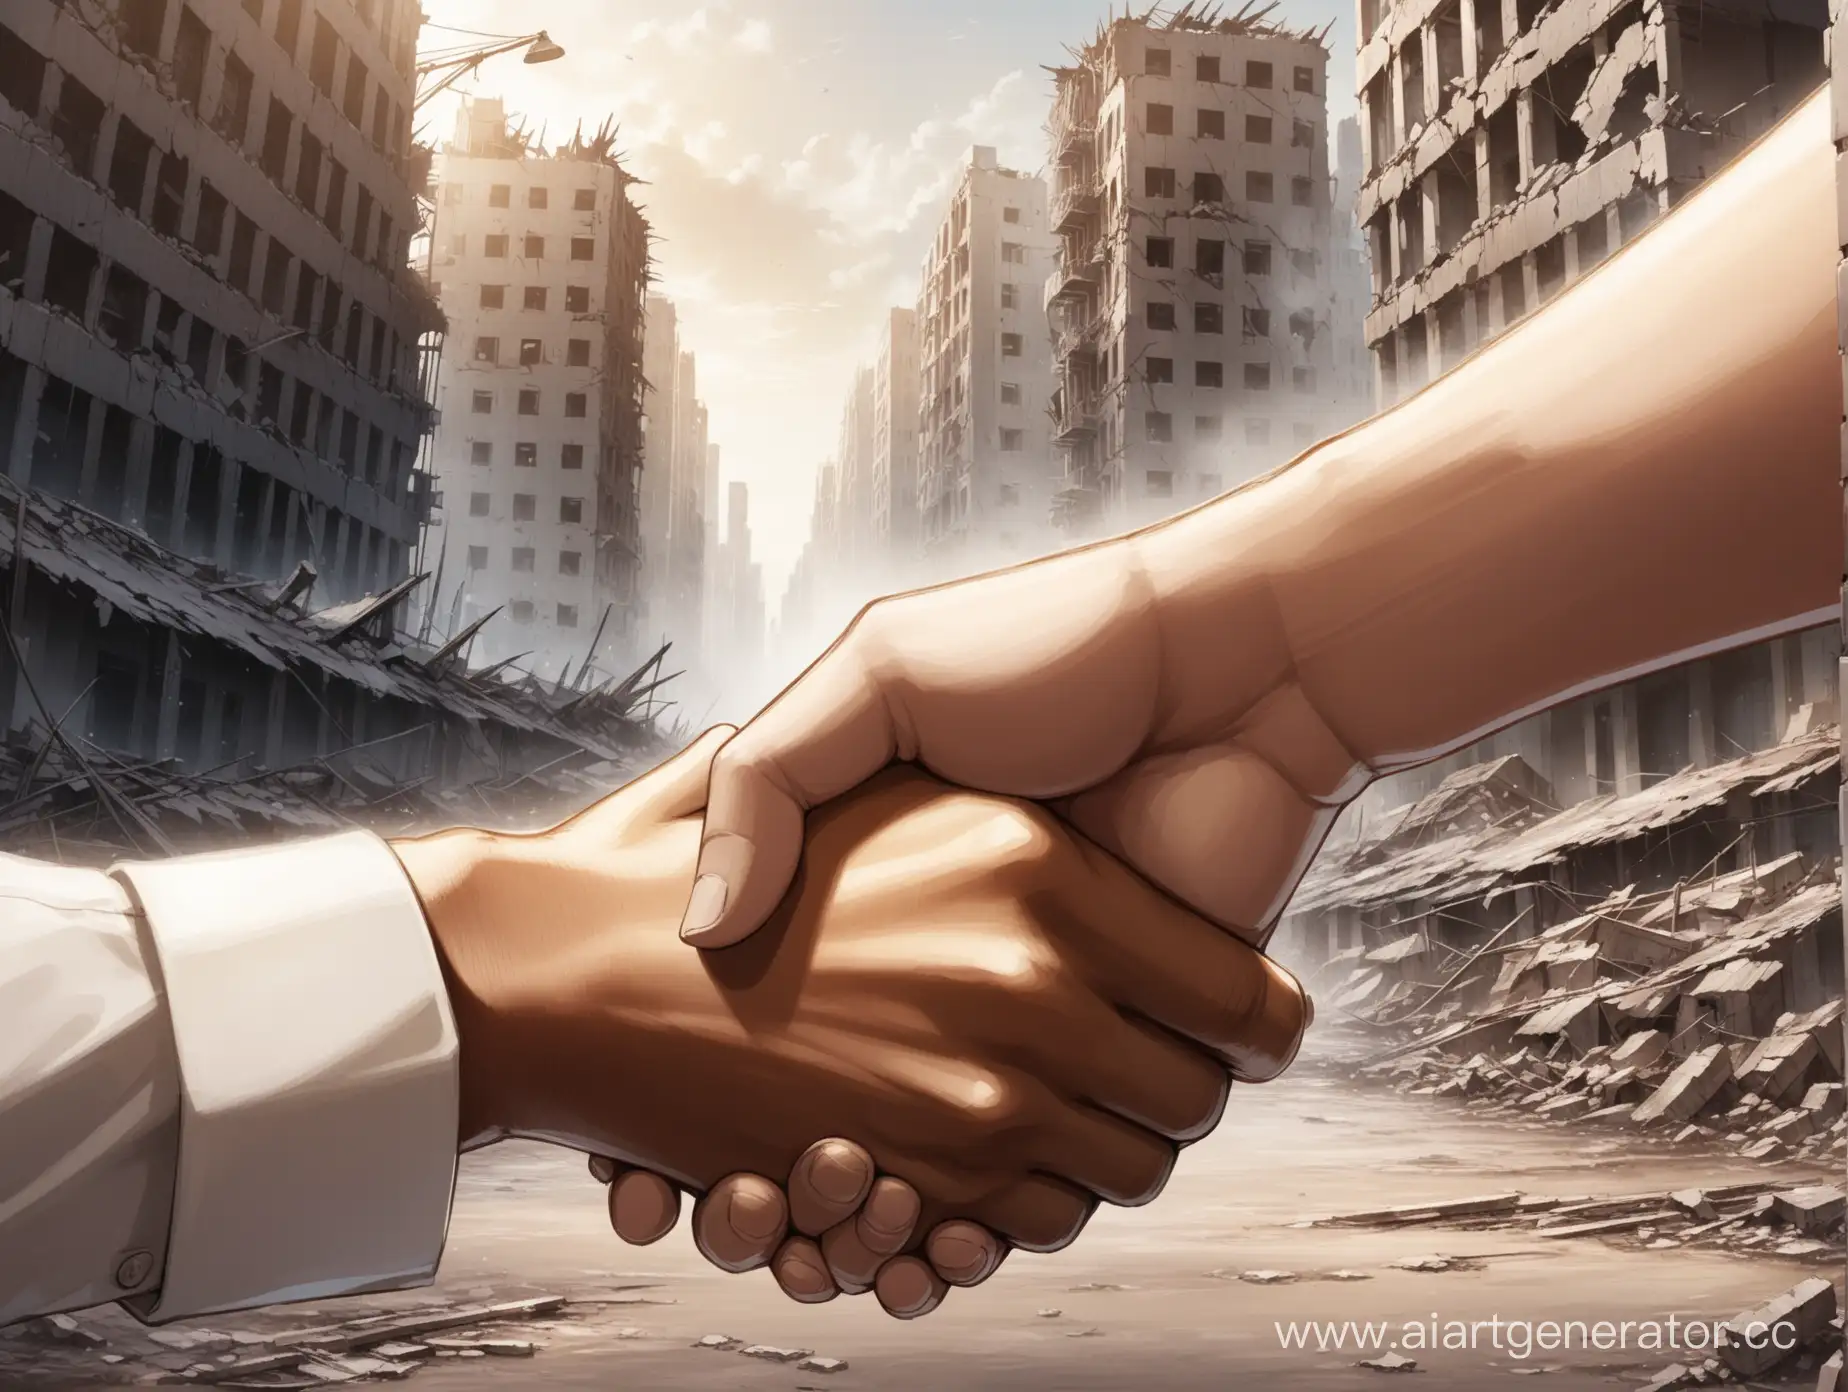 CloseUp-Handshake-Amidst-Devastated-Urban-Landscape